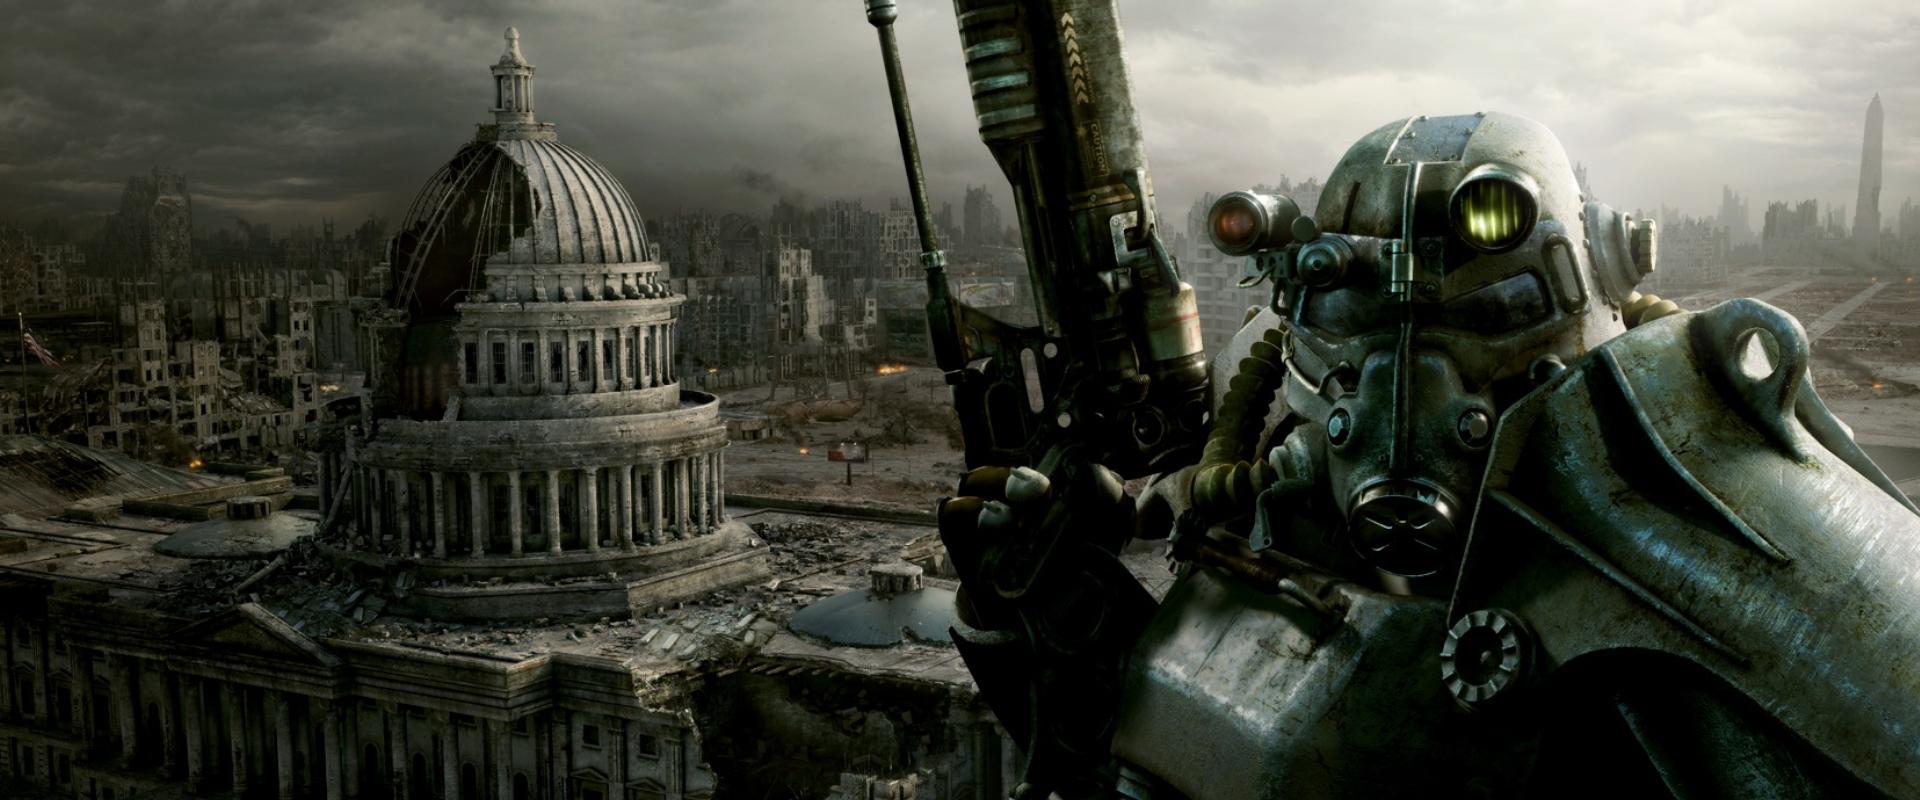 Így nézne ki a Fallout 5, ha Magyarországon játszódna